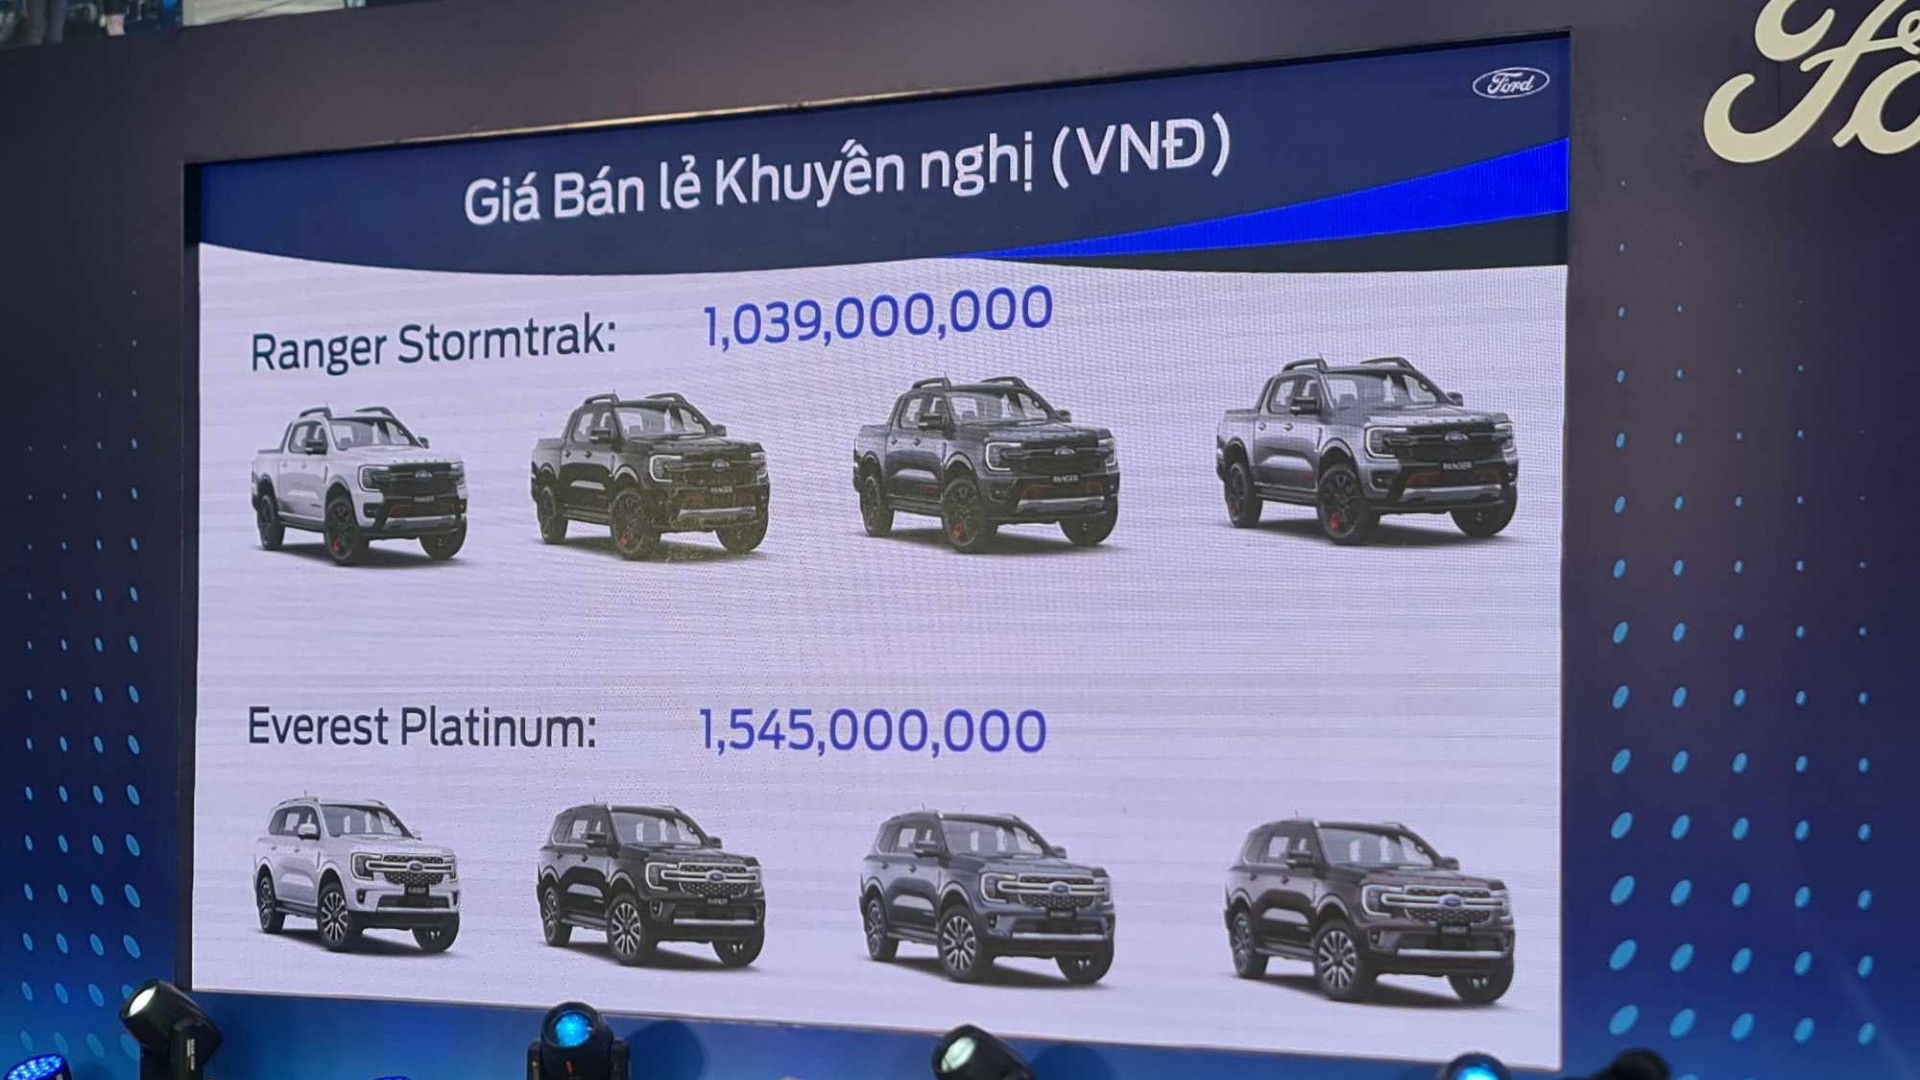 Ford Việt Nam công bố giá Ranger Stormtrak và giá Everest Platinum